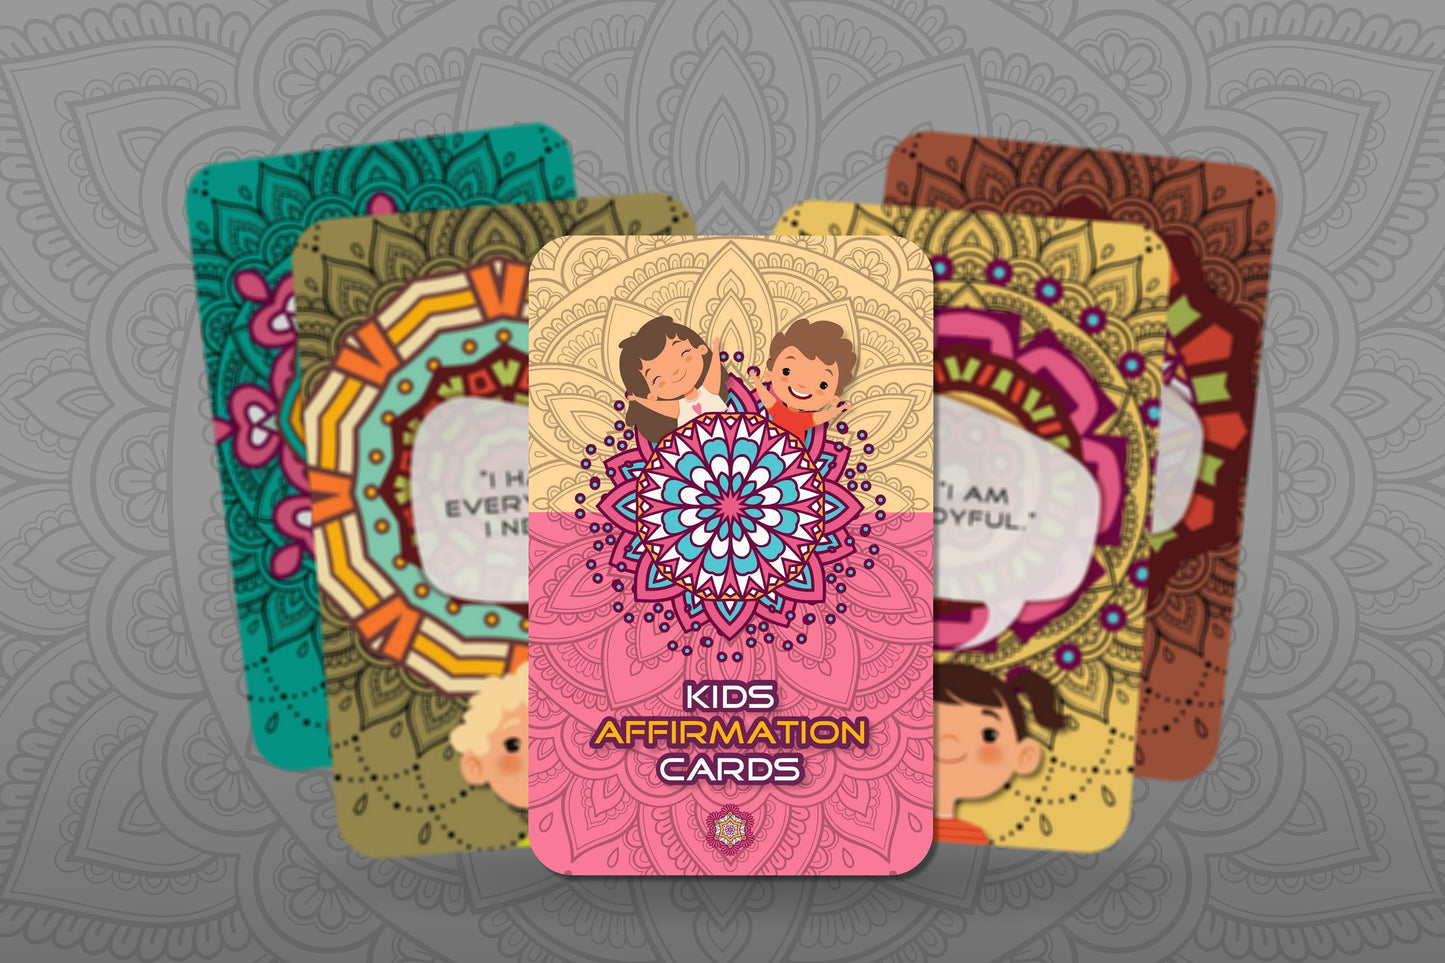 Kids Affirmation Cards - Wisdom Cards for Kids